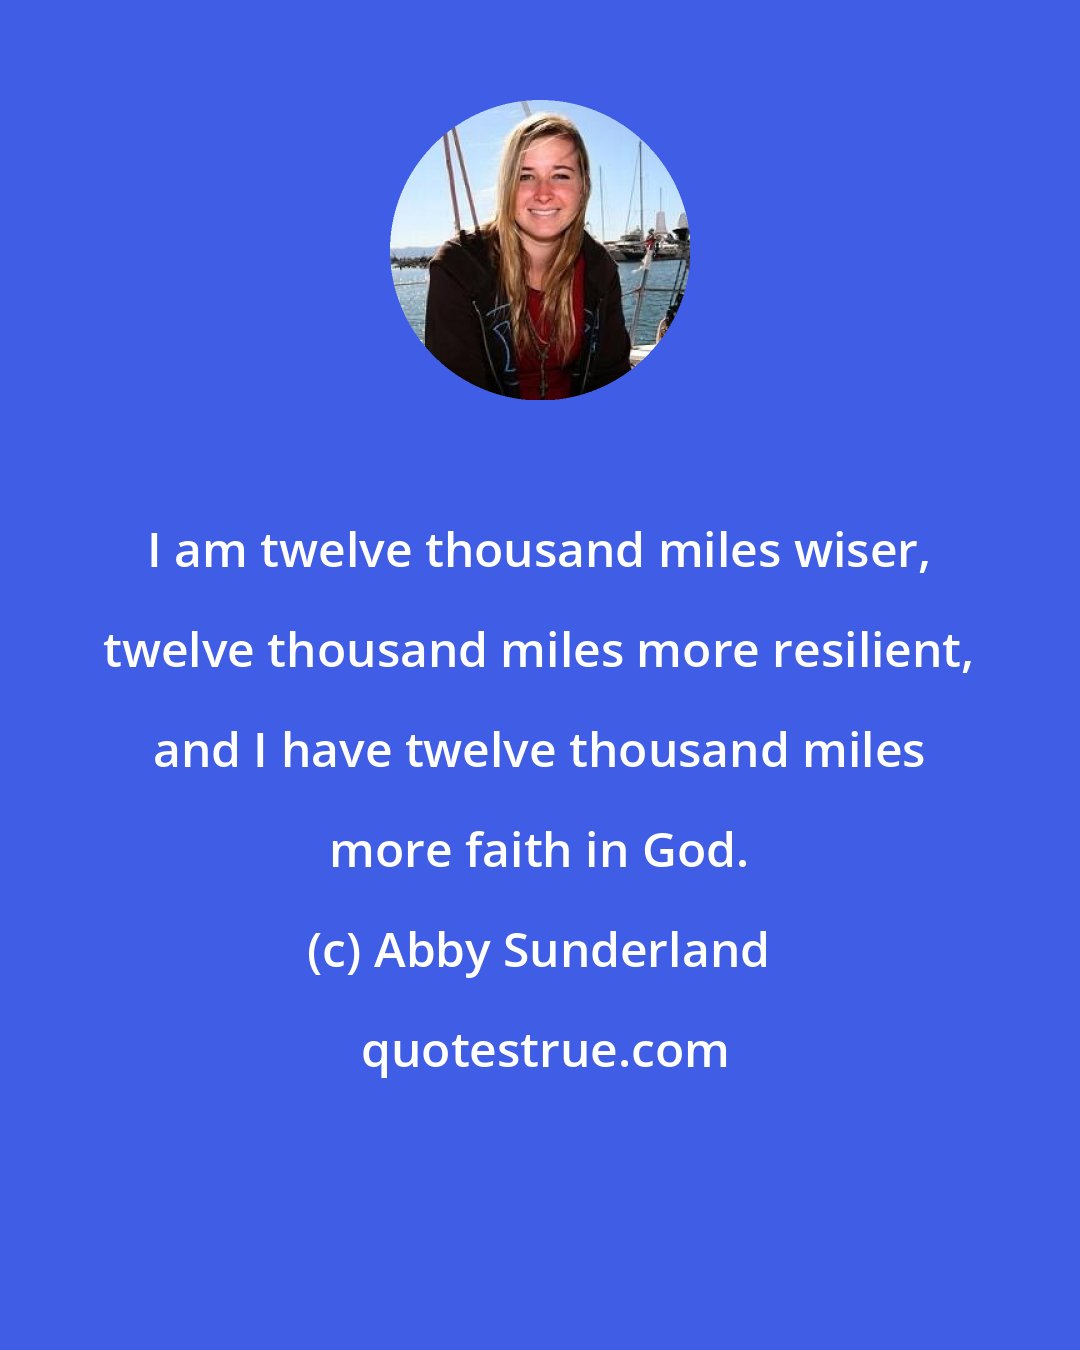 Abby Sunderland: I am twelve thousand miles wiser, twelve thousand miles more resilient, and I have twelve thousand miles more faith in God.